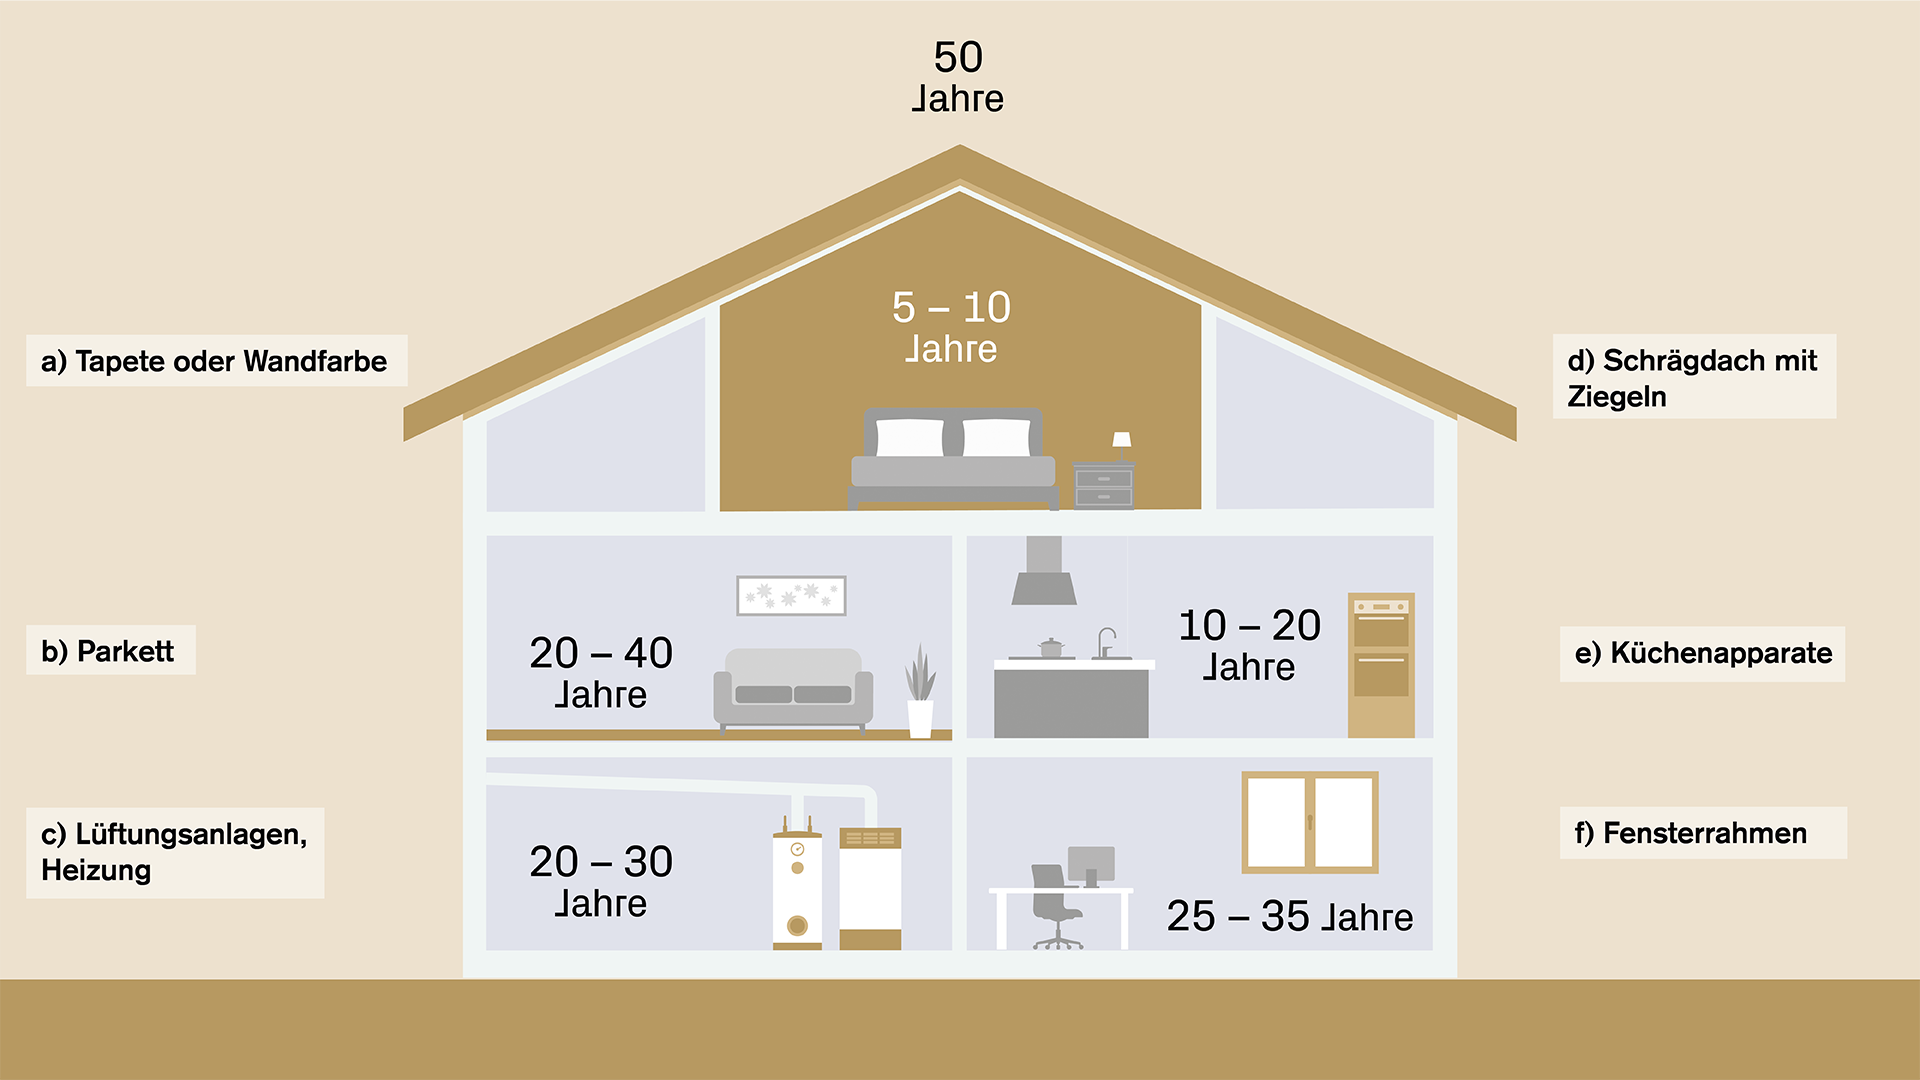 Sanierung des Hauses: Wann welche Bauteile ausgetauscht werden sollten